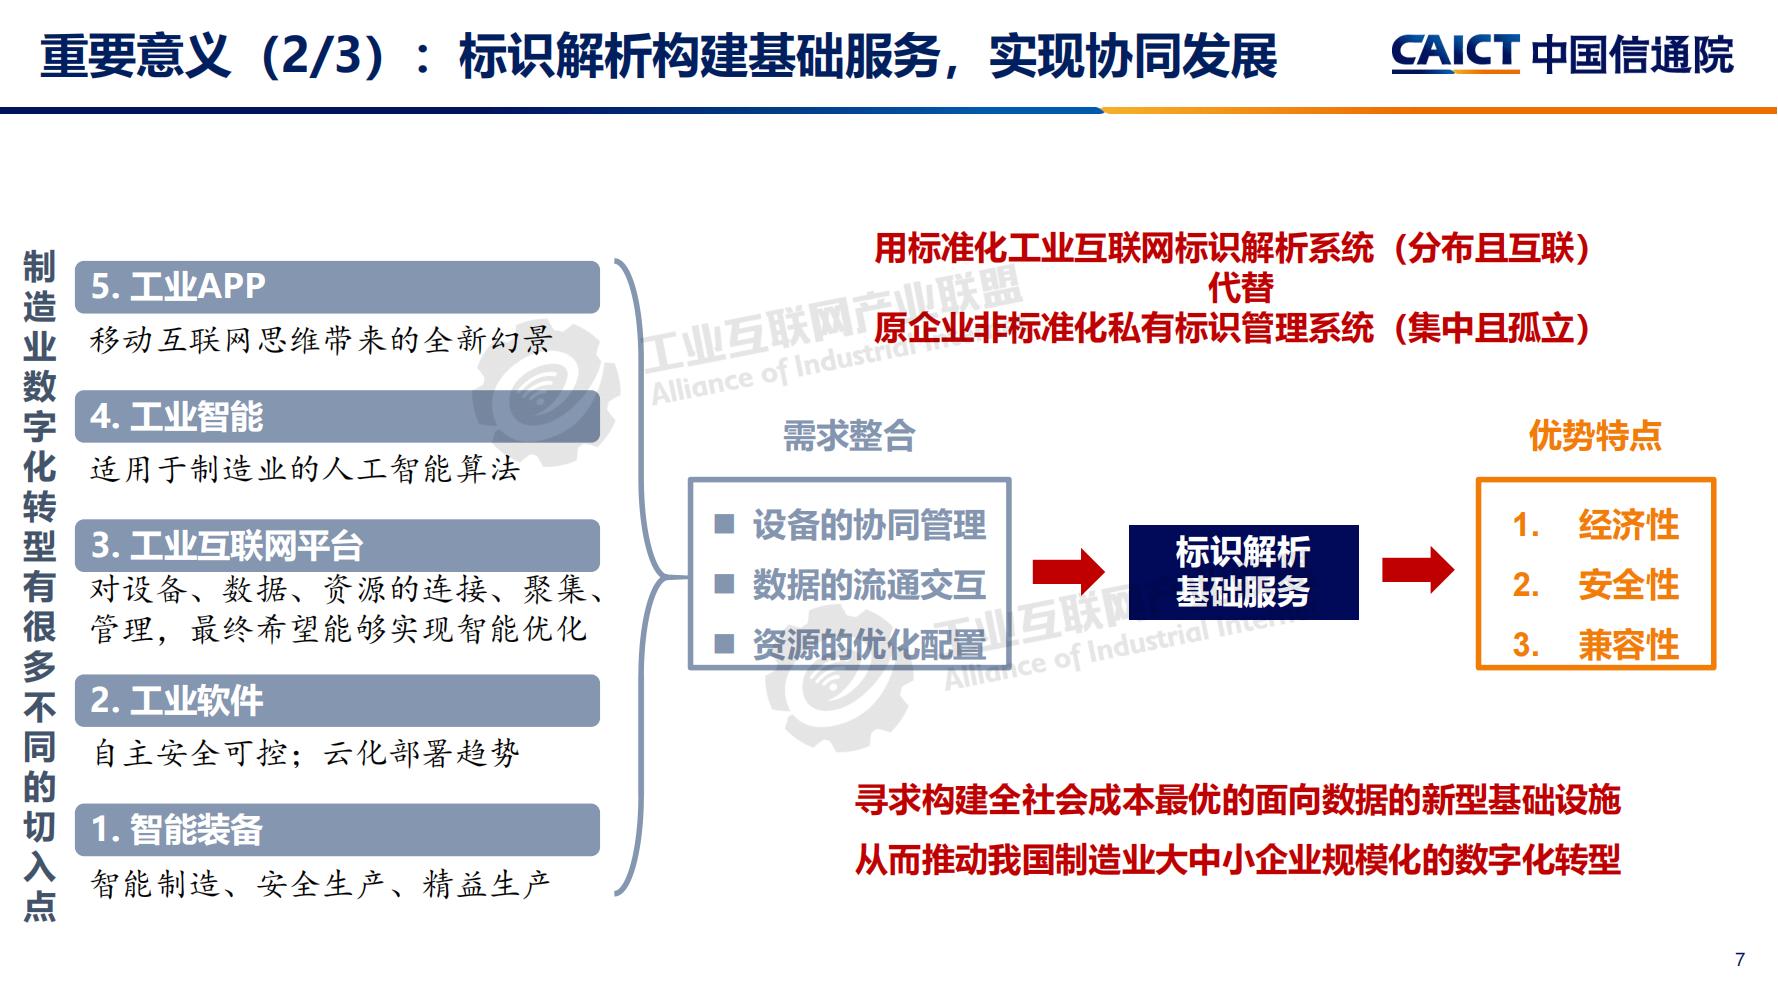 4-betway体育亚洲版入口标识解析体系建设进展（深圳）12-16(1)-水印_06.jpg